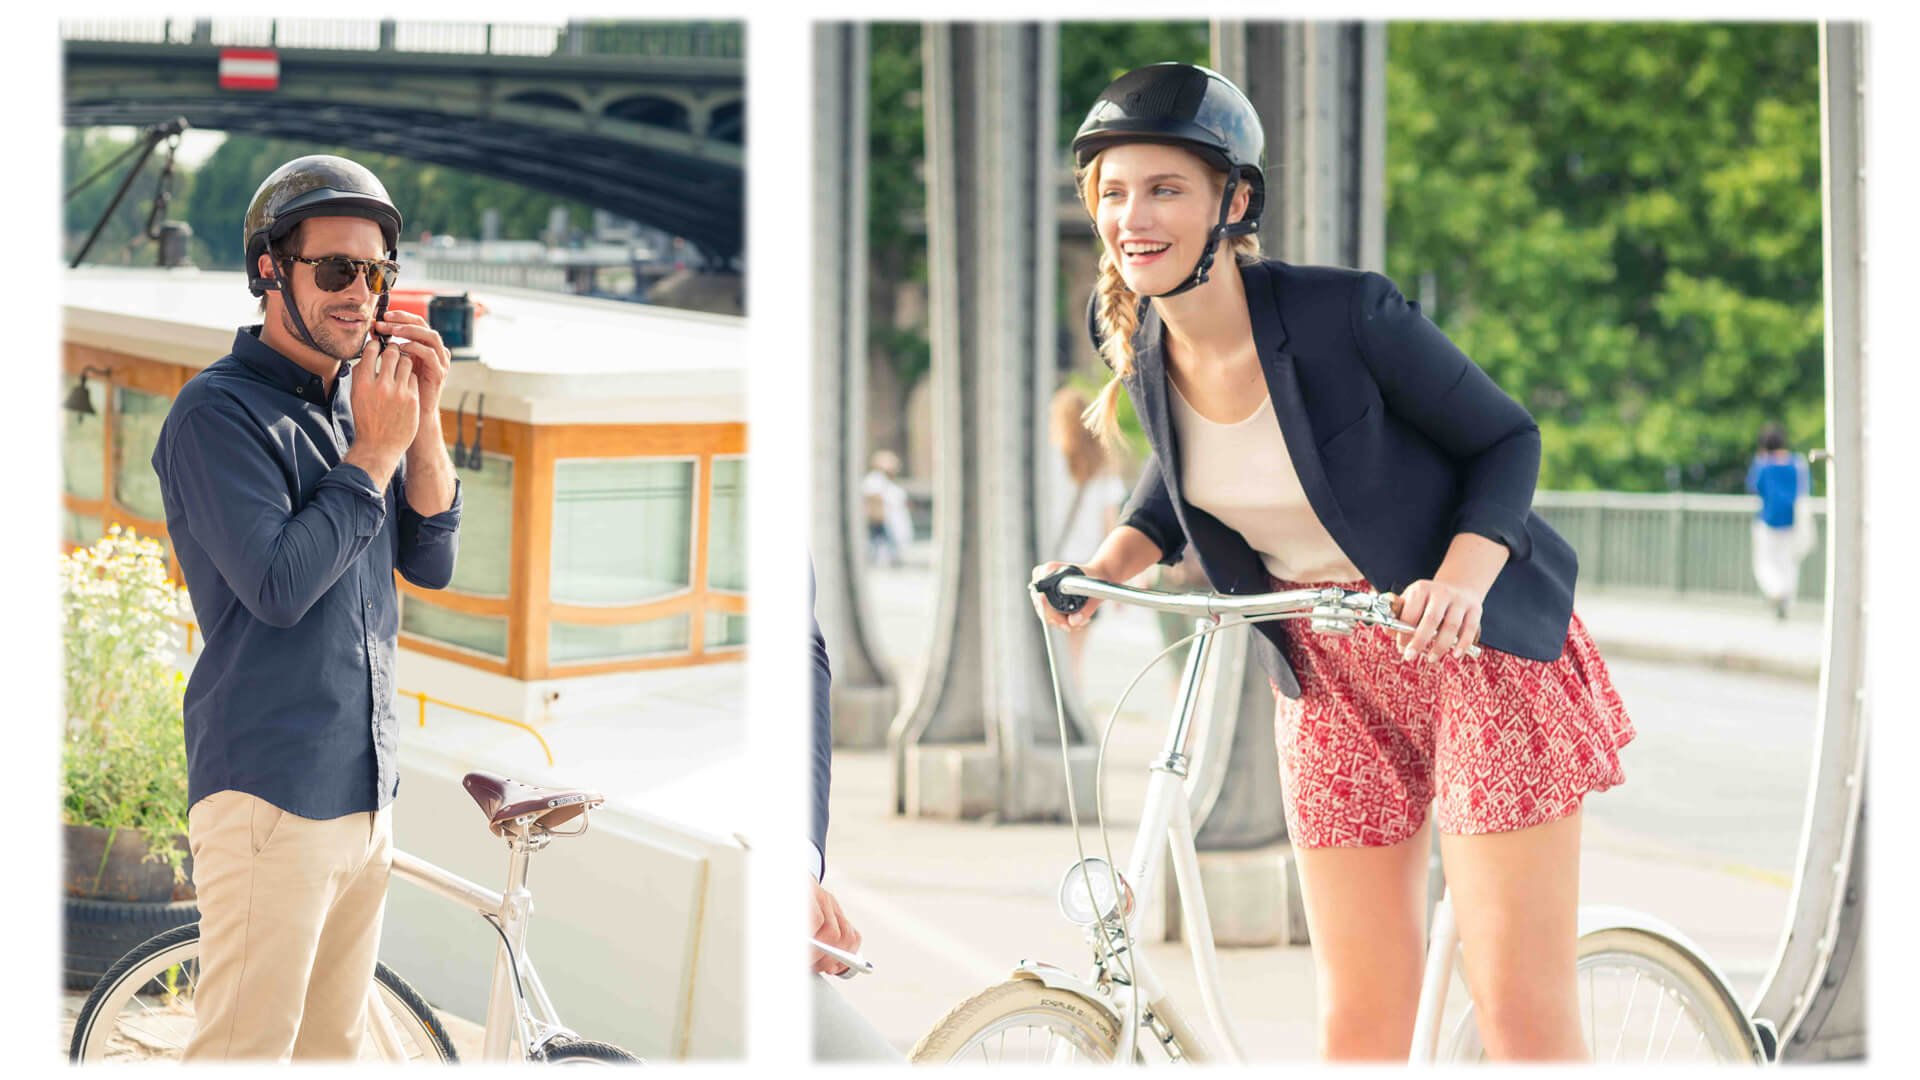 On a testé : les casques de vélo pour femmes et hommes –